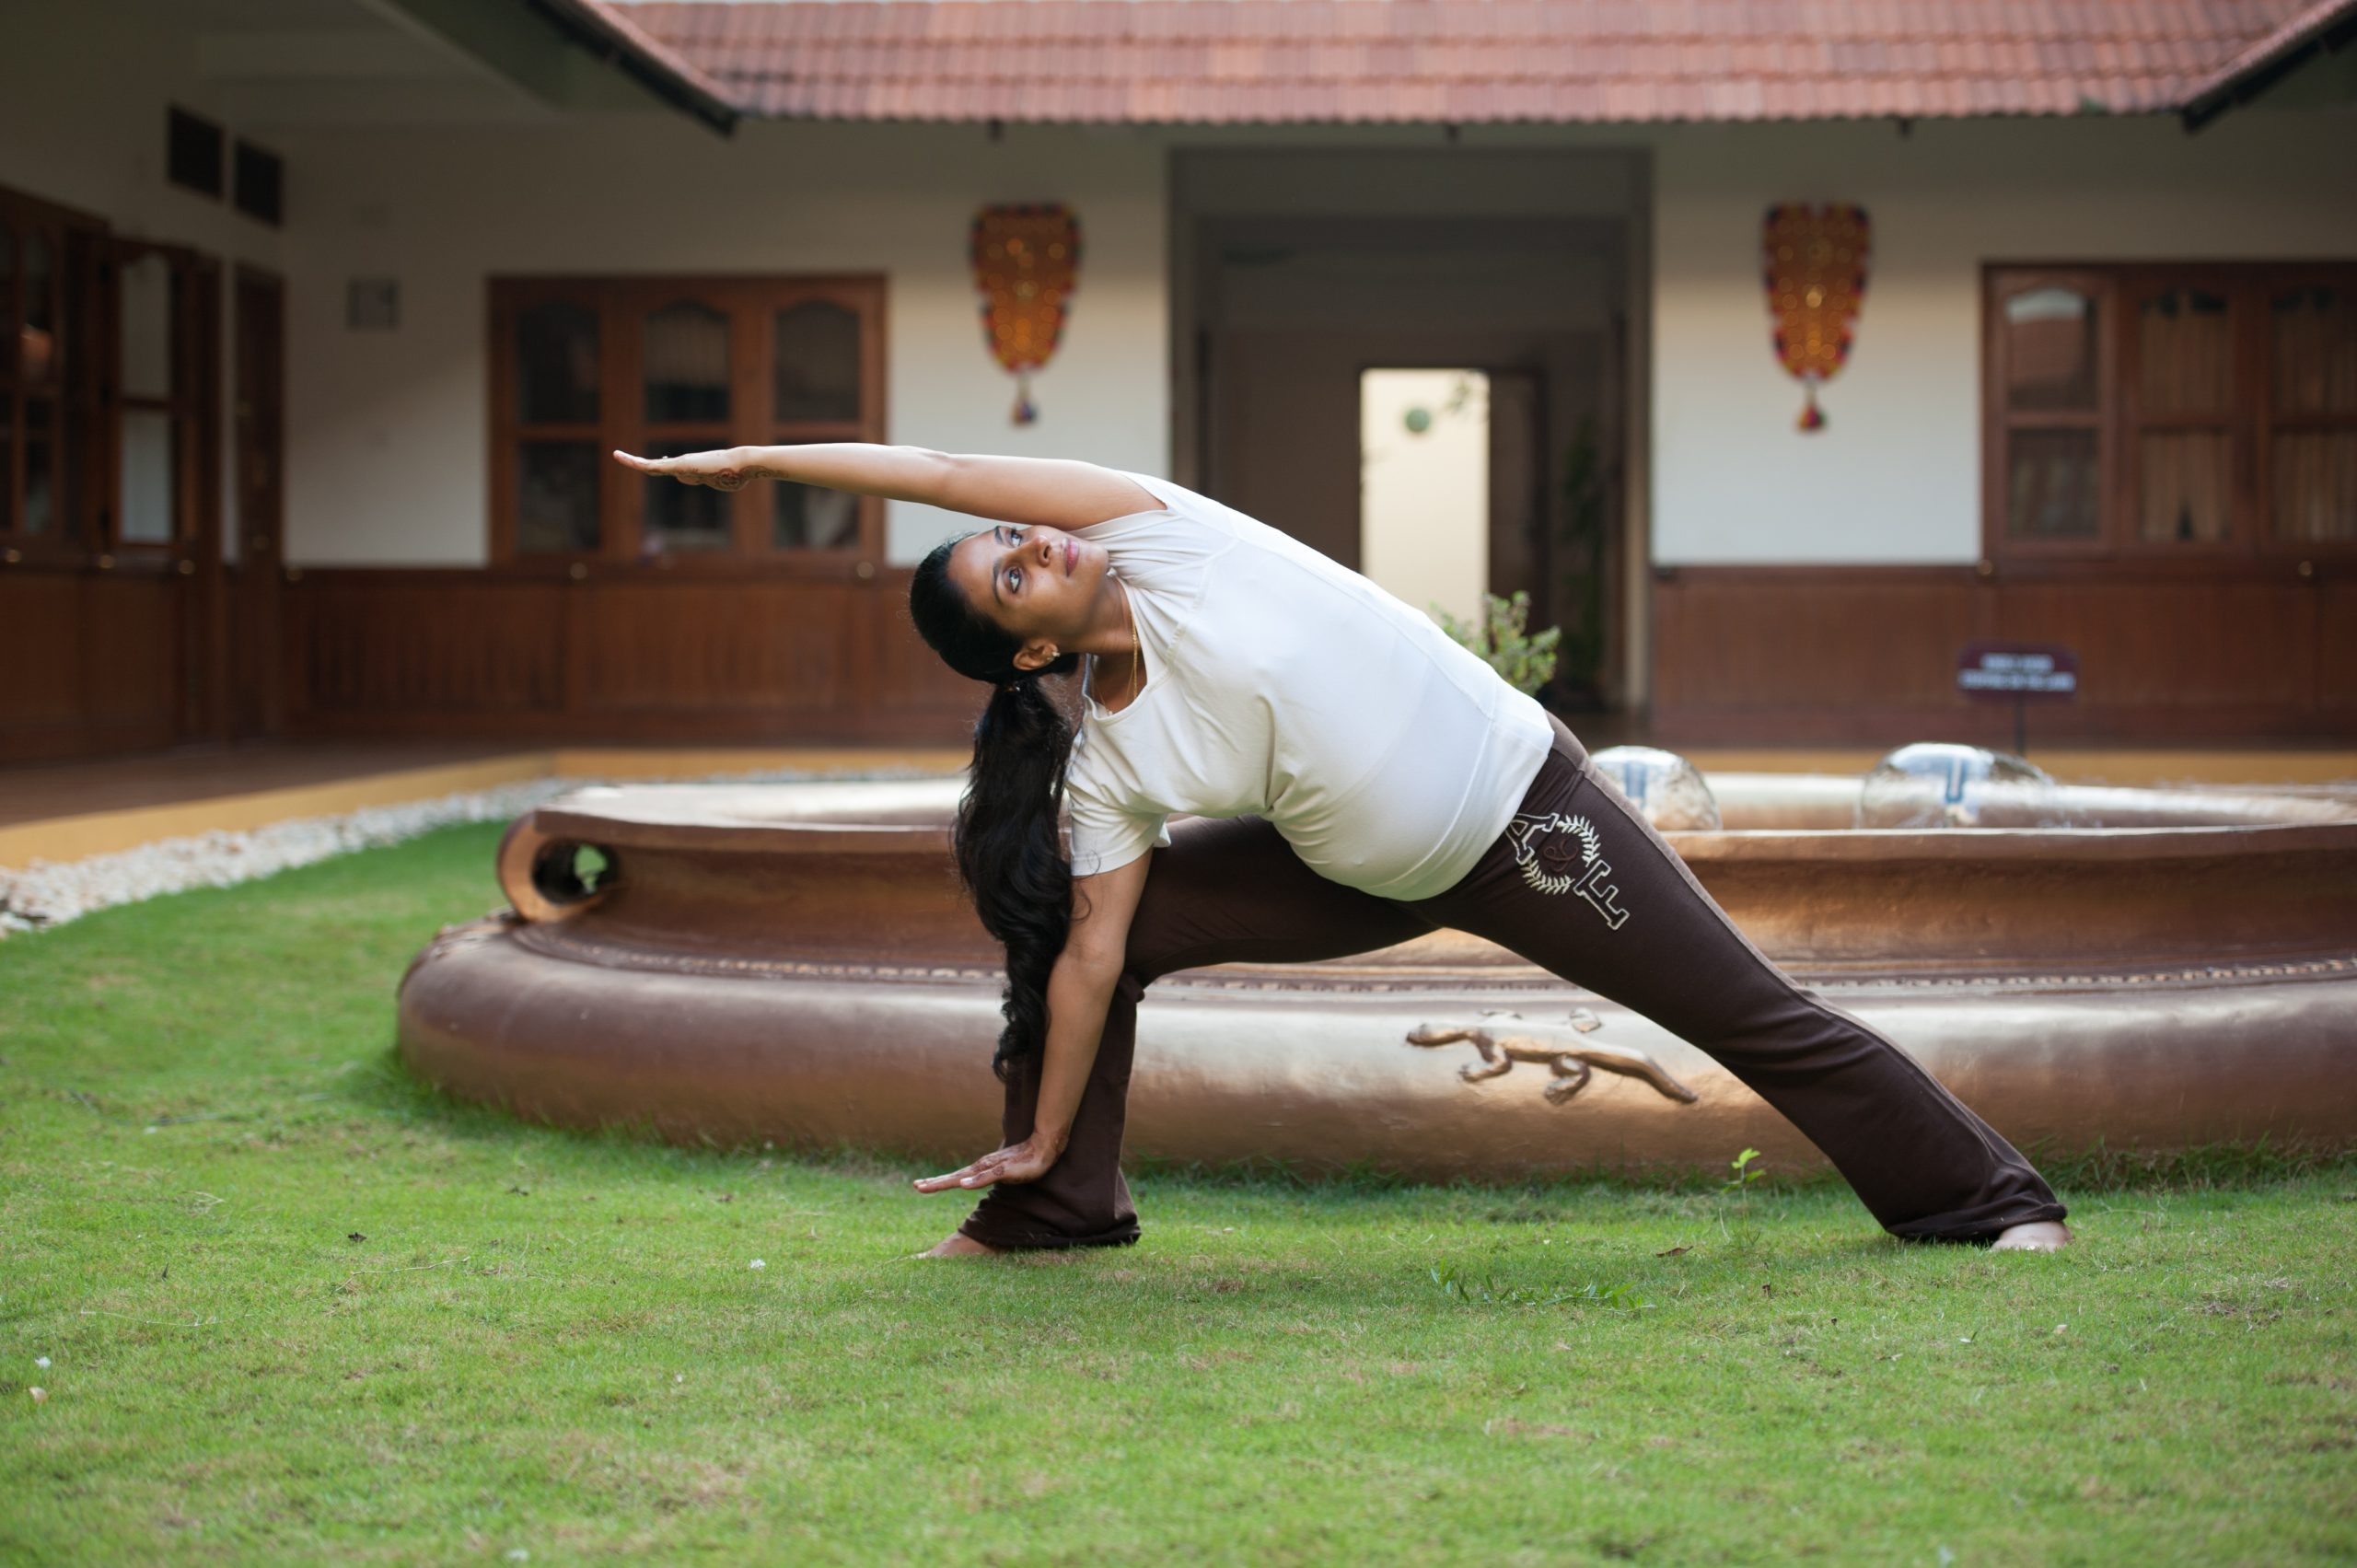 Best Prenatal Yoga Poses for Pregnant Women (1, 2, 3 Trim.)